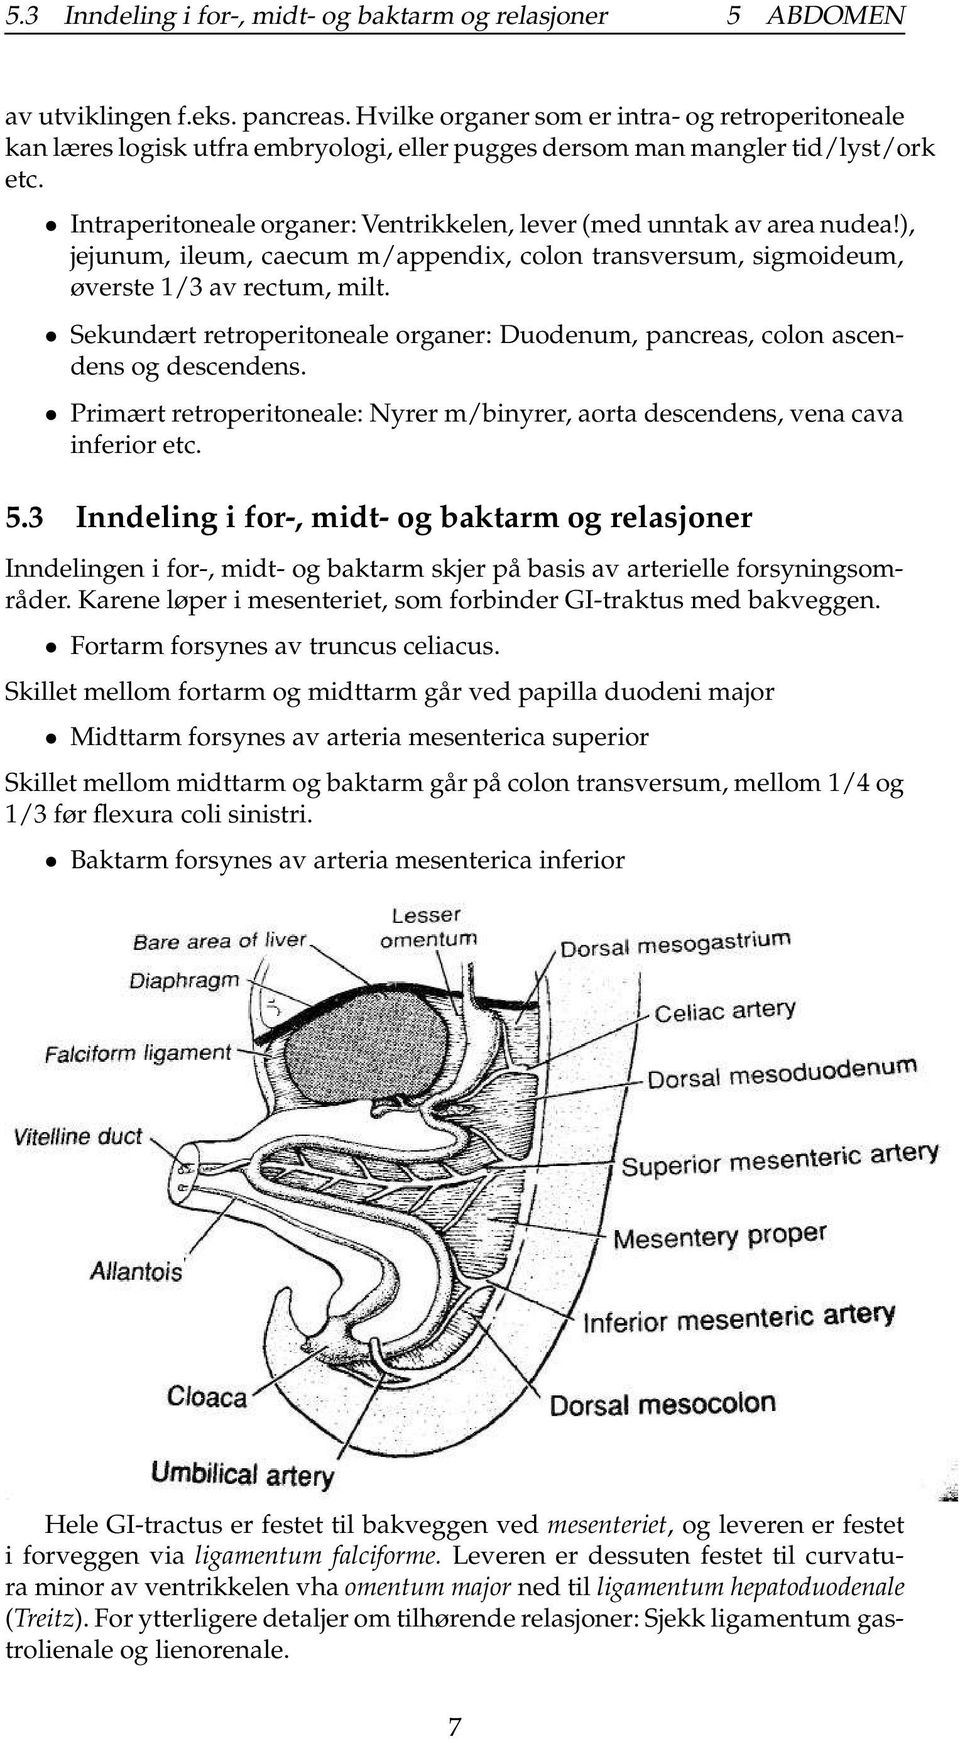 Intraperitoneale organer: Ventrikkelen, lever (med unntak av area nudea!), jejunum, ileum, caecum m/appendix, colon transversum, sigmoideum, øverste 1/3 av rectum, milt.